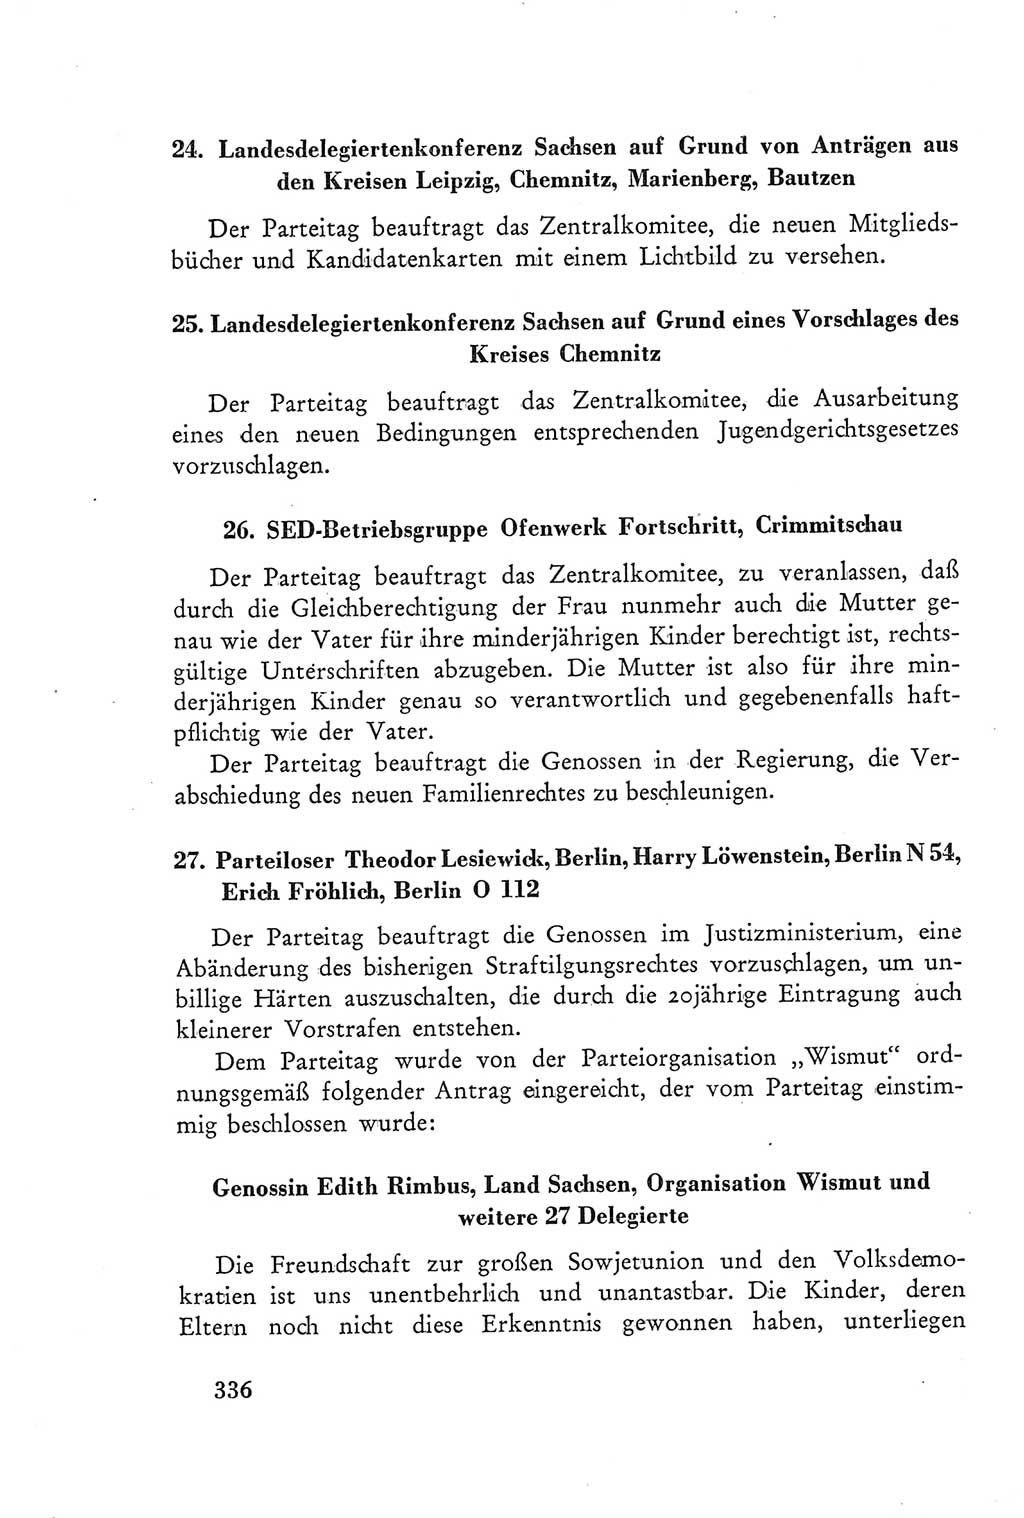 Protokoll der Verhandlungen des Ⅲ. Parteitages der Sozialistischen Einheitspartei Deutschlands (SED) [Deutsche Demokratische Republik (DDR)] 1950, Band 2, Seite 336 (Prot. Verh. Ⅲ. PT SED DDR 1950, Bd. 2, S. 336)